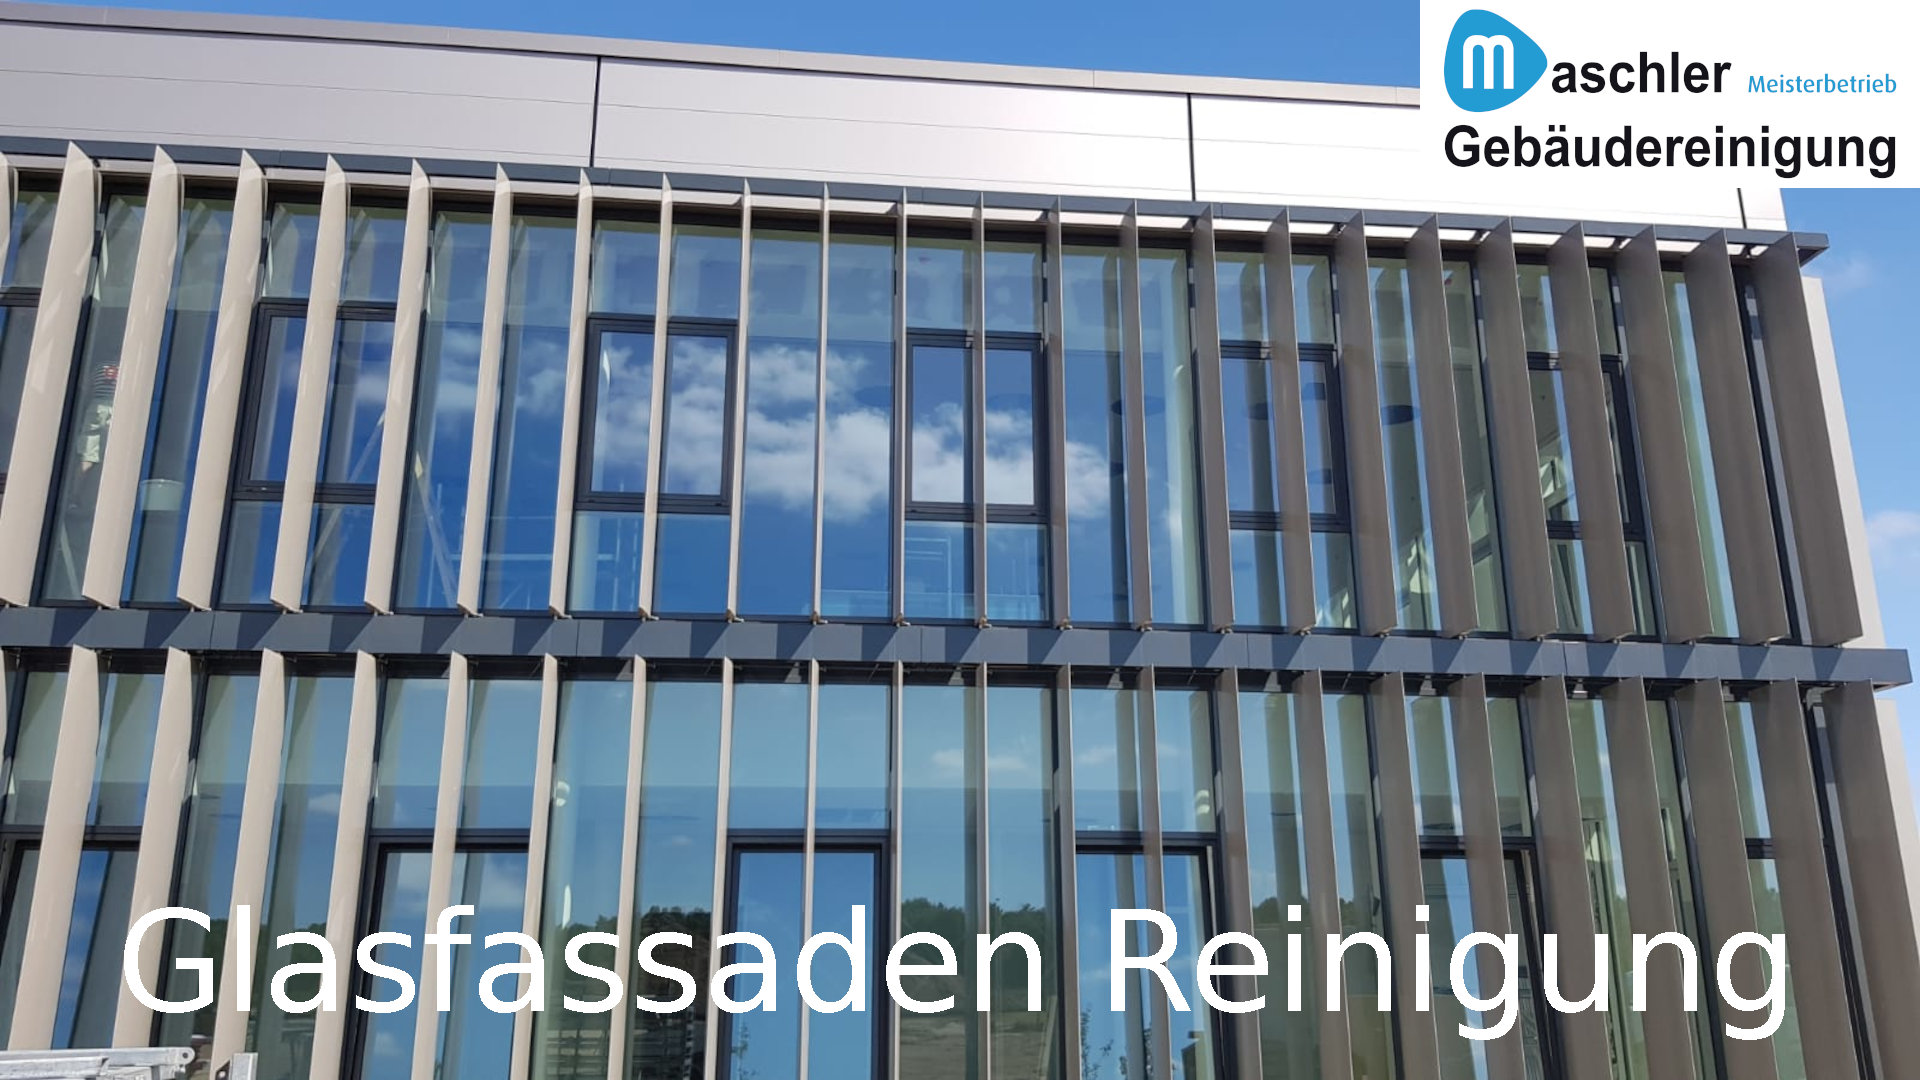 Glasfassadenreinigung - Gebäudereinigung Maschler Rostock